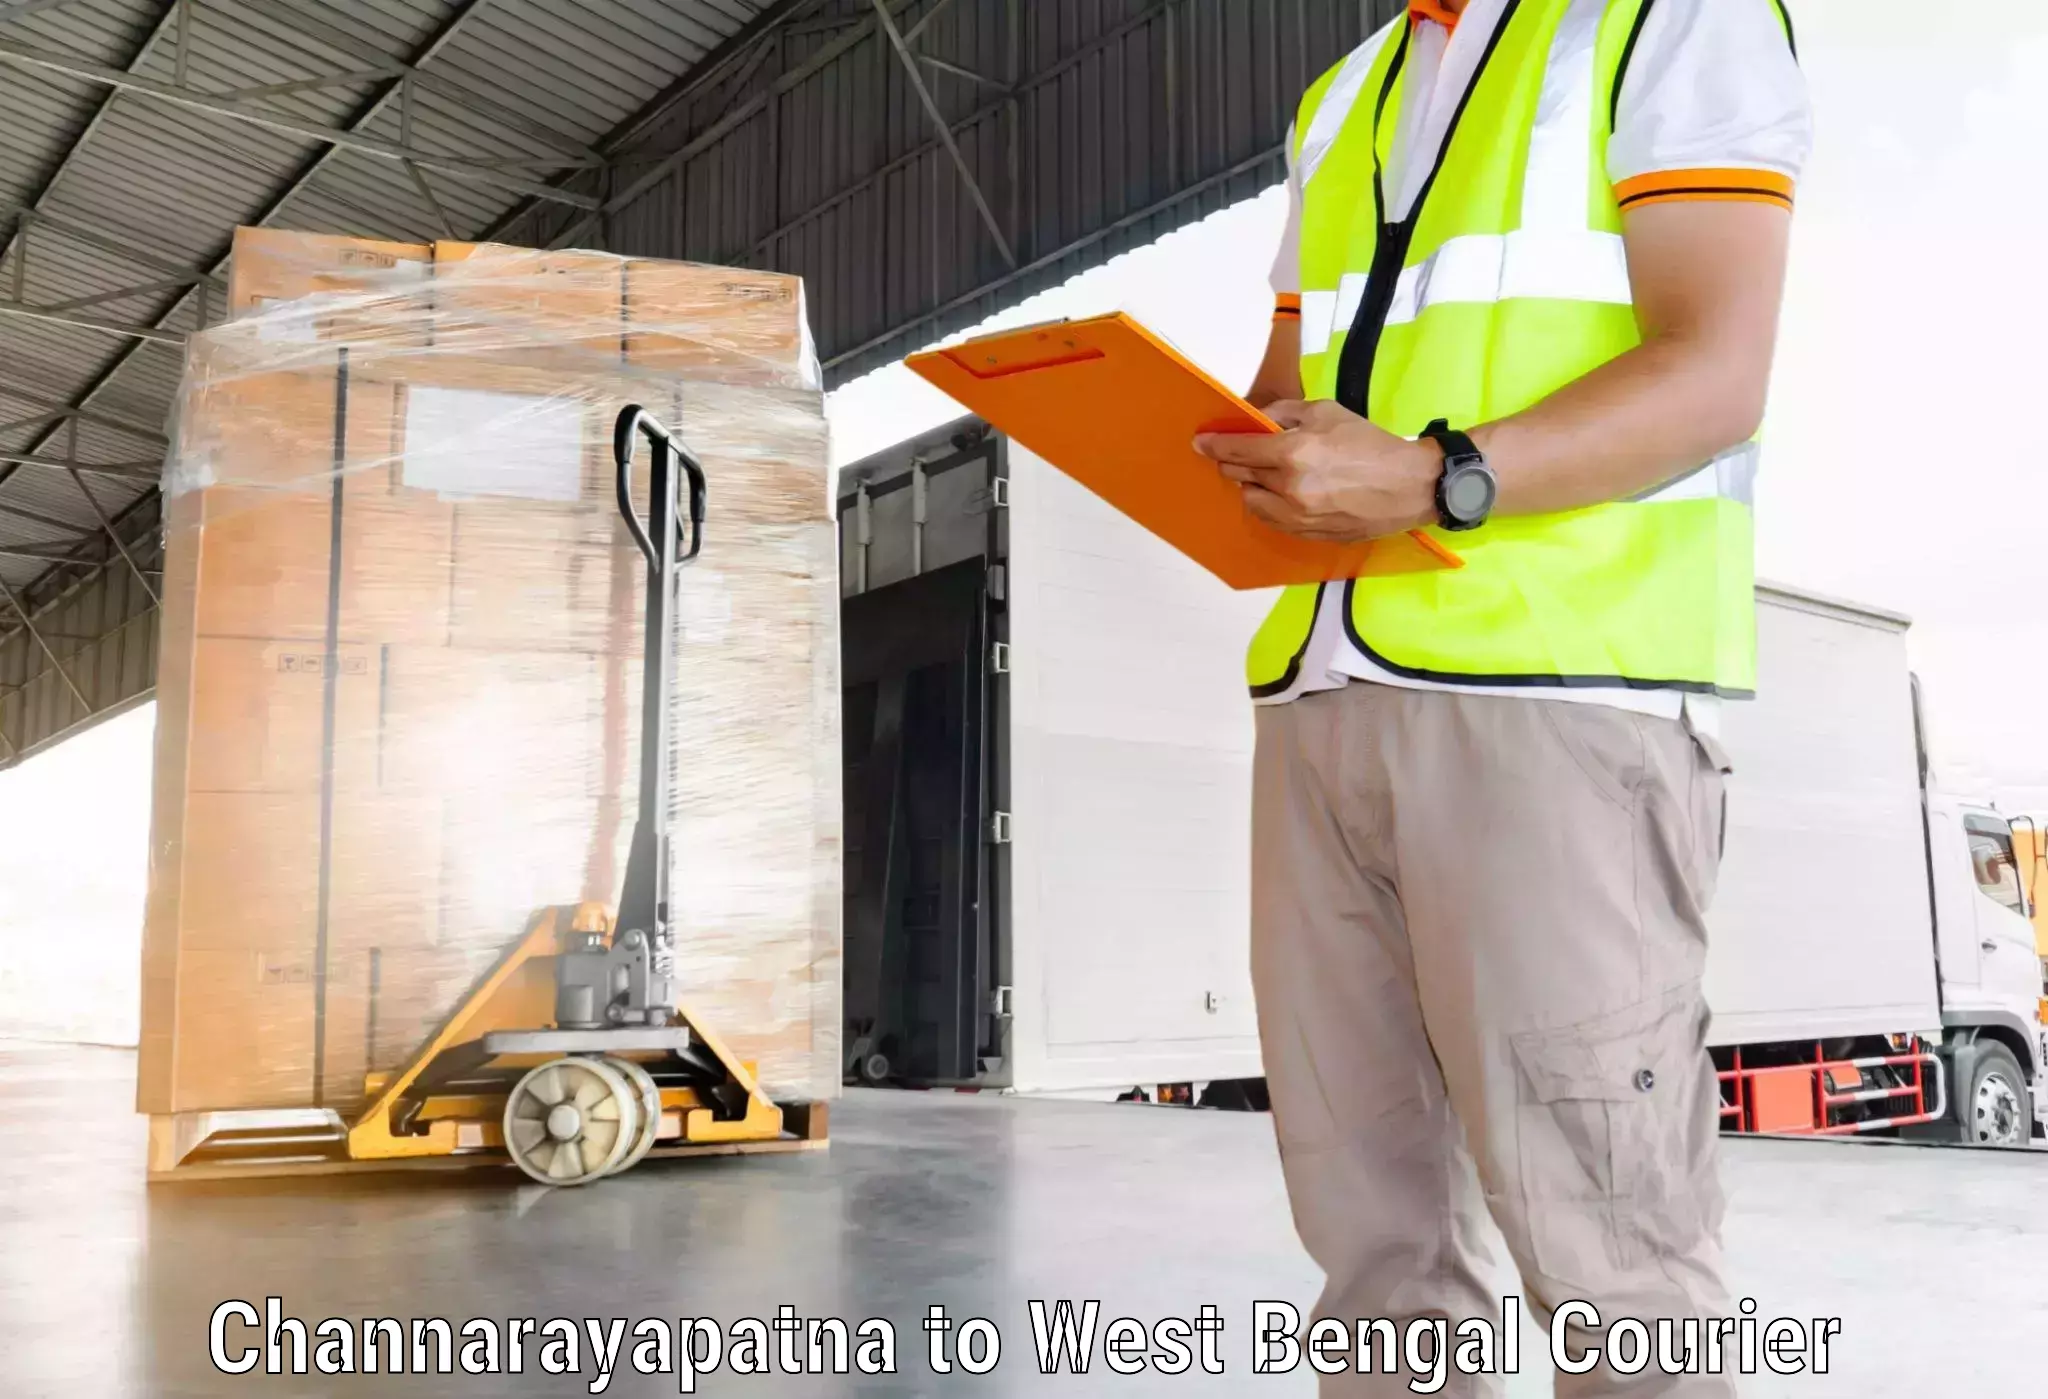 24-hour courier service Channarayapatna to Panjipara